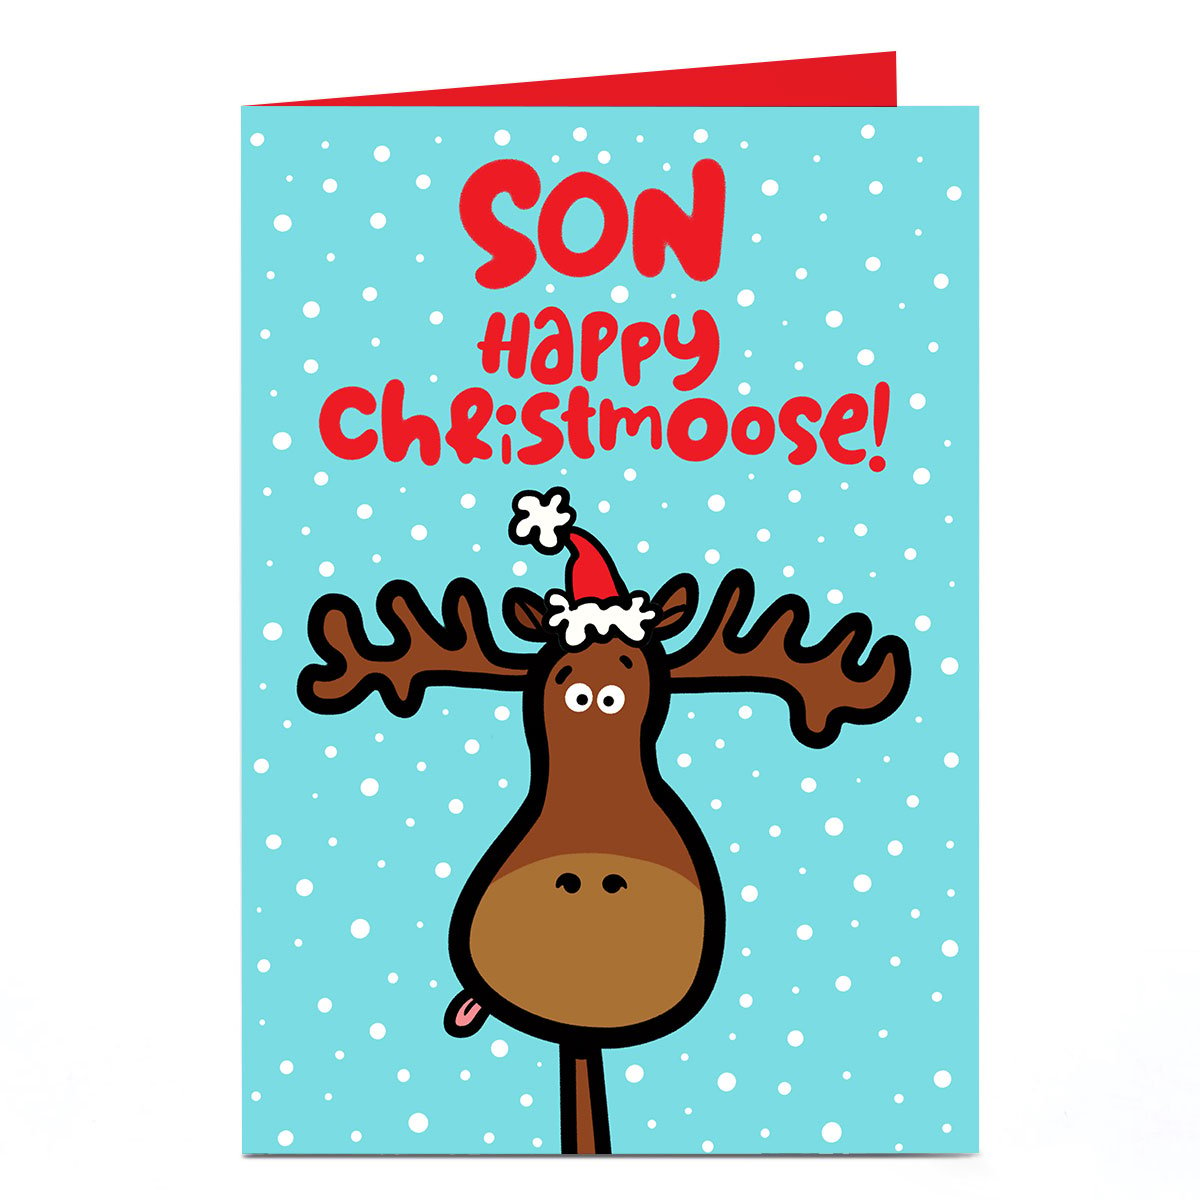 Personalised Fruitloops Christmas Card - Happy Christmoose Son